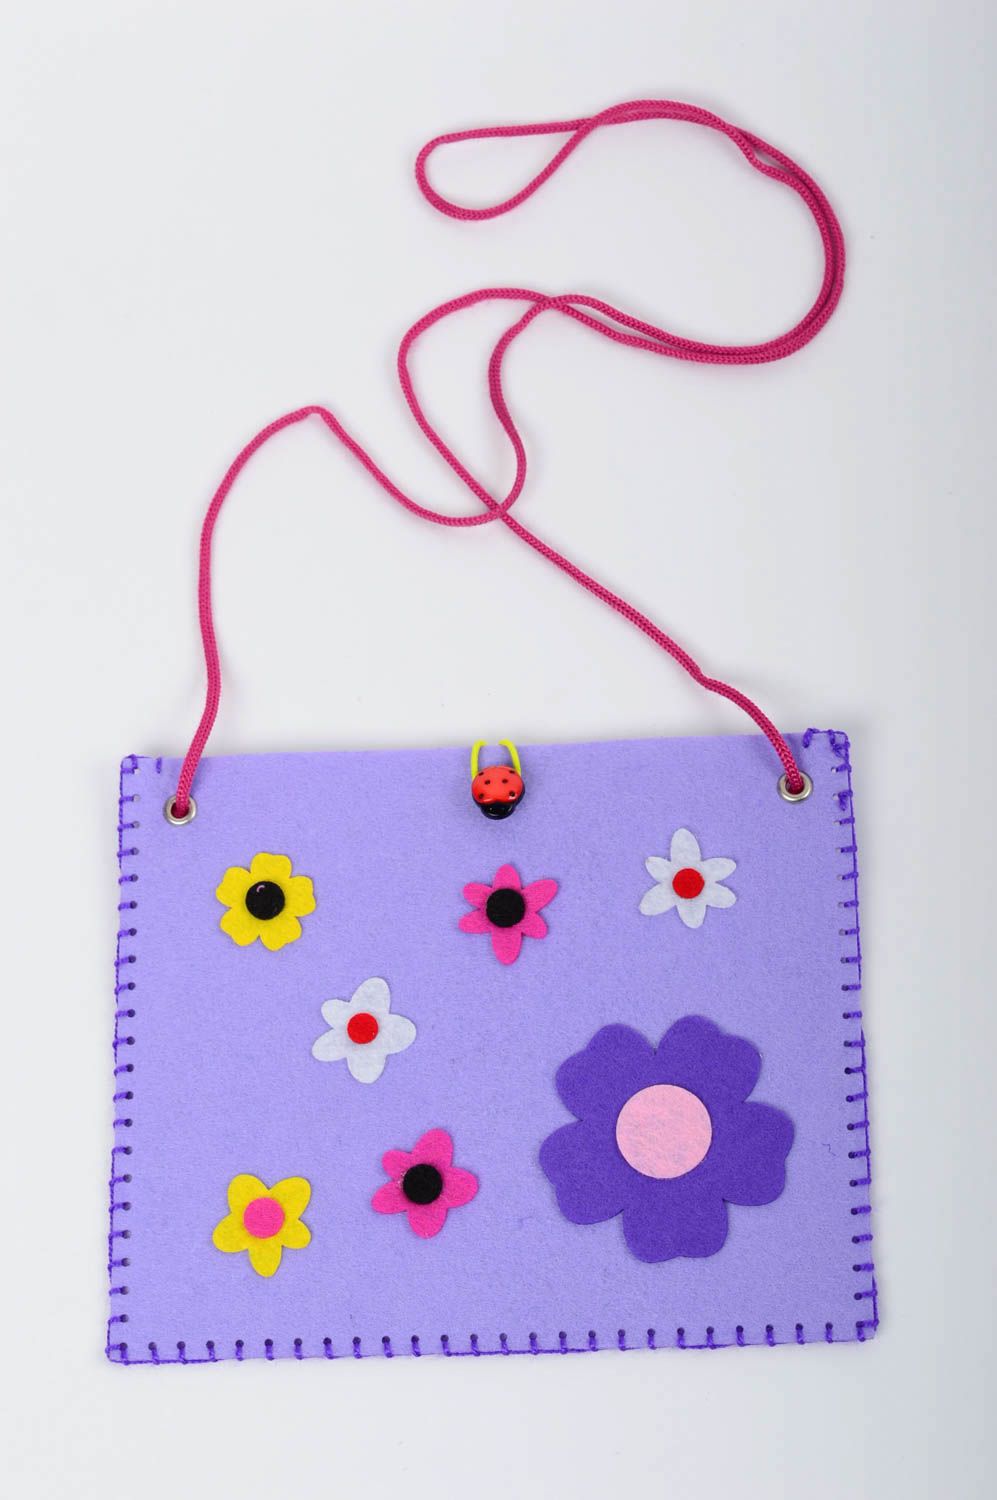 Сумка ручной работы сумка из фетра сиреневая сумка для детей с цветочками фото 1